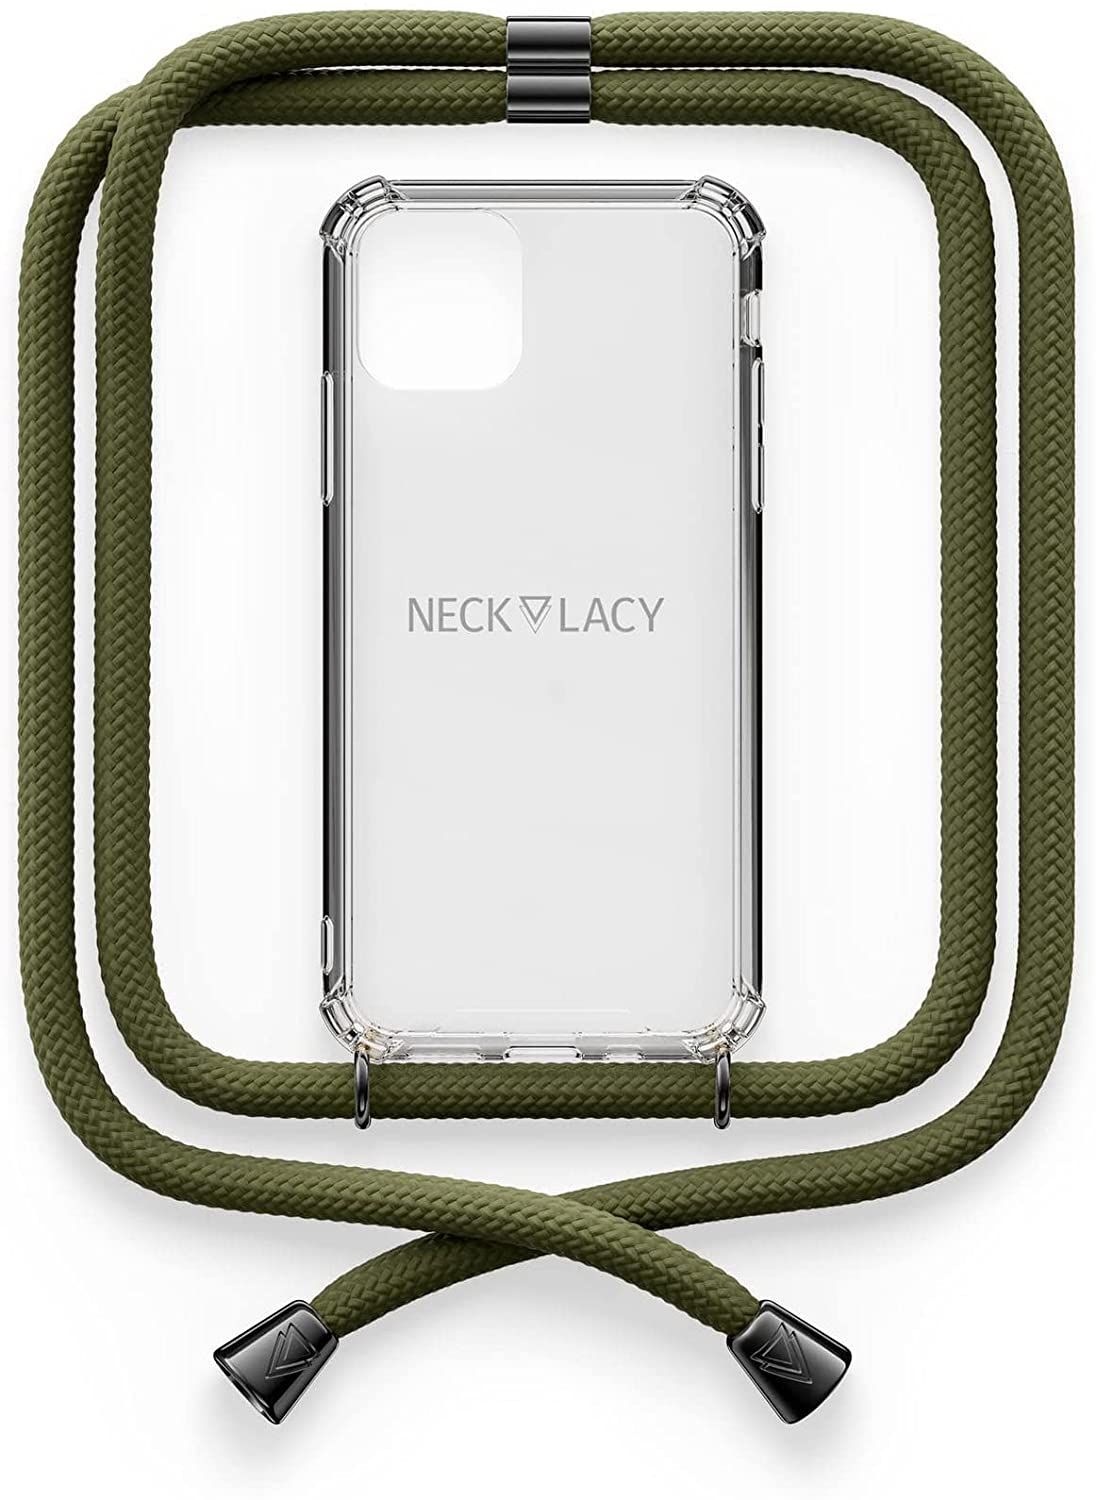 NECKLACY Handykette Handyhülle zum umhängen - für iPhone 7/8 - Case / Handyhülle mit Band zum umhängen - Trageband Hals mit Kordel - Smartphone Necklace, Dark Olive Gunmetal